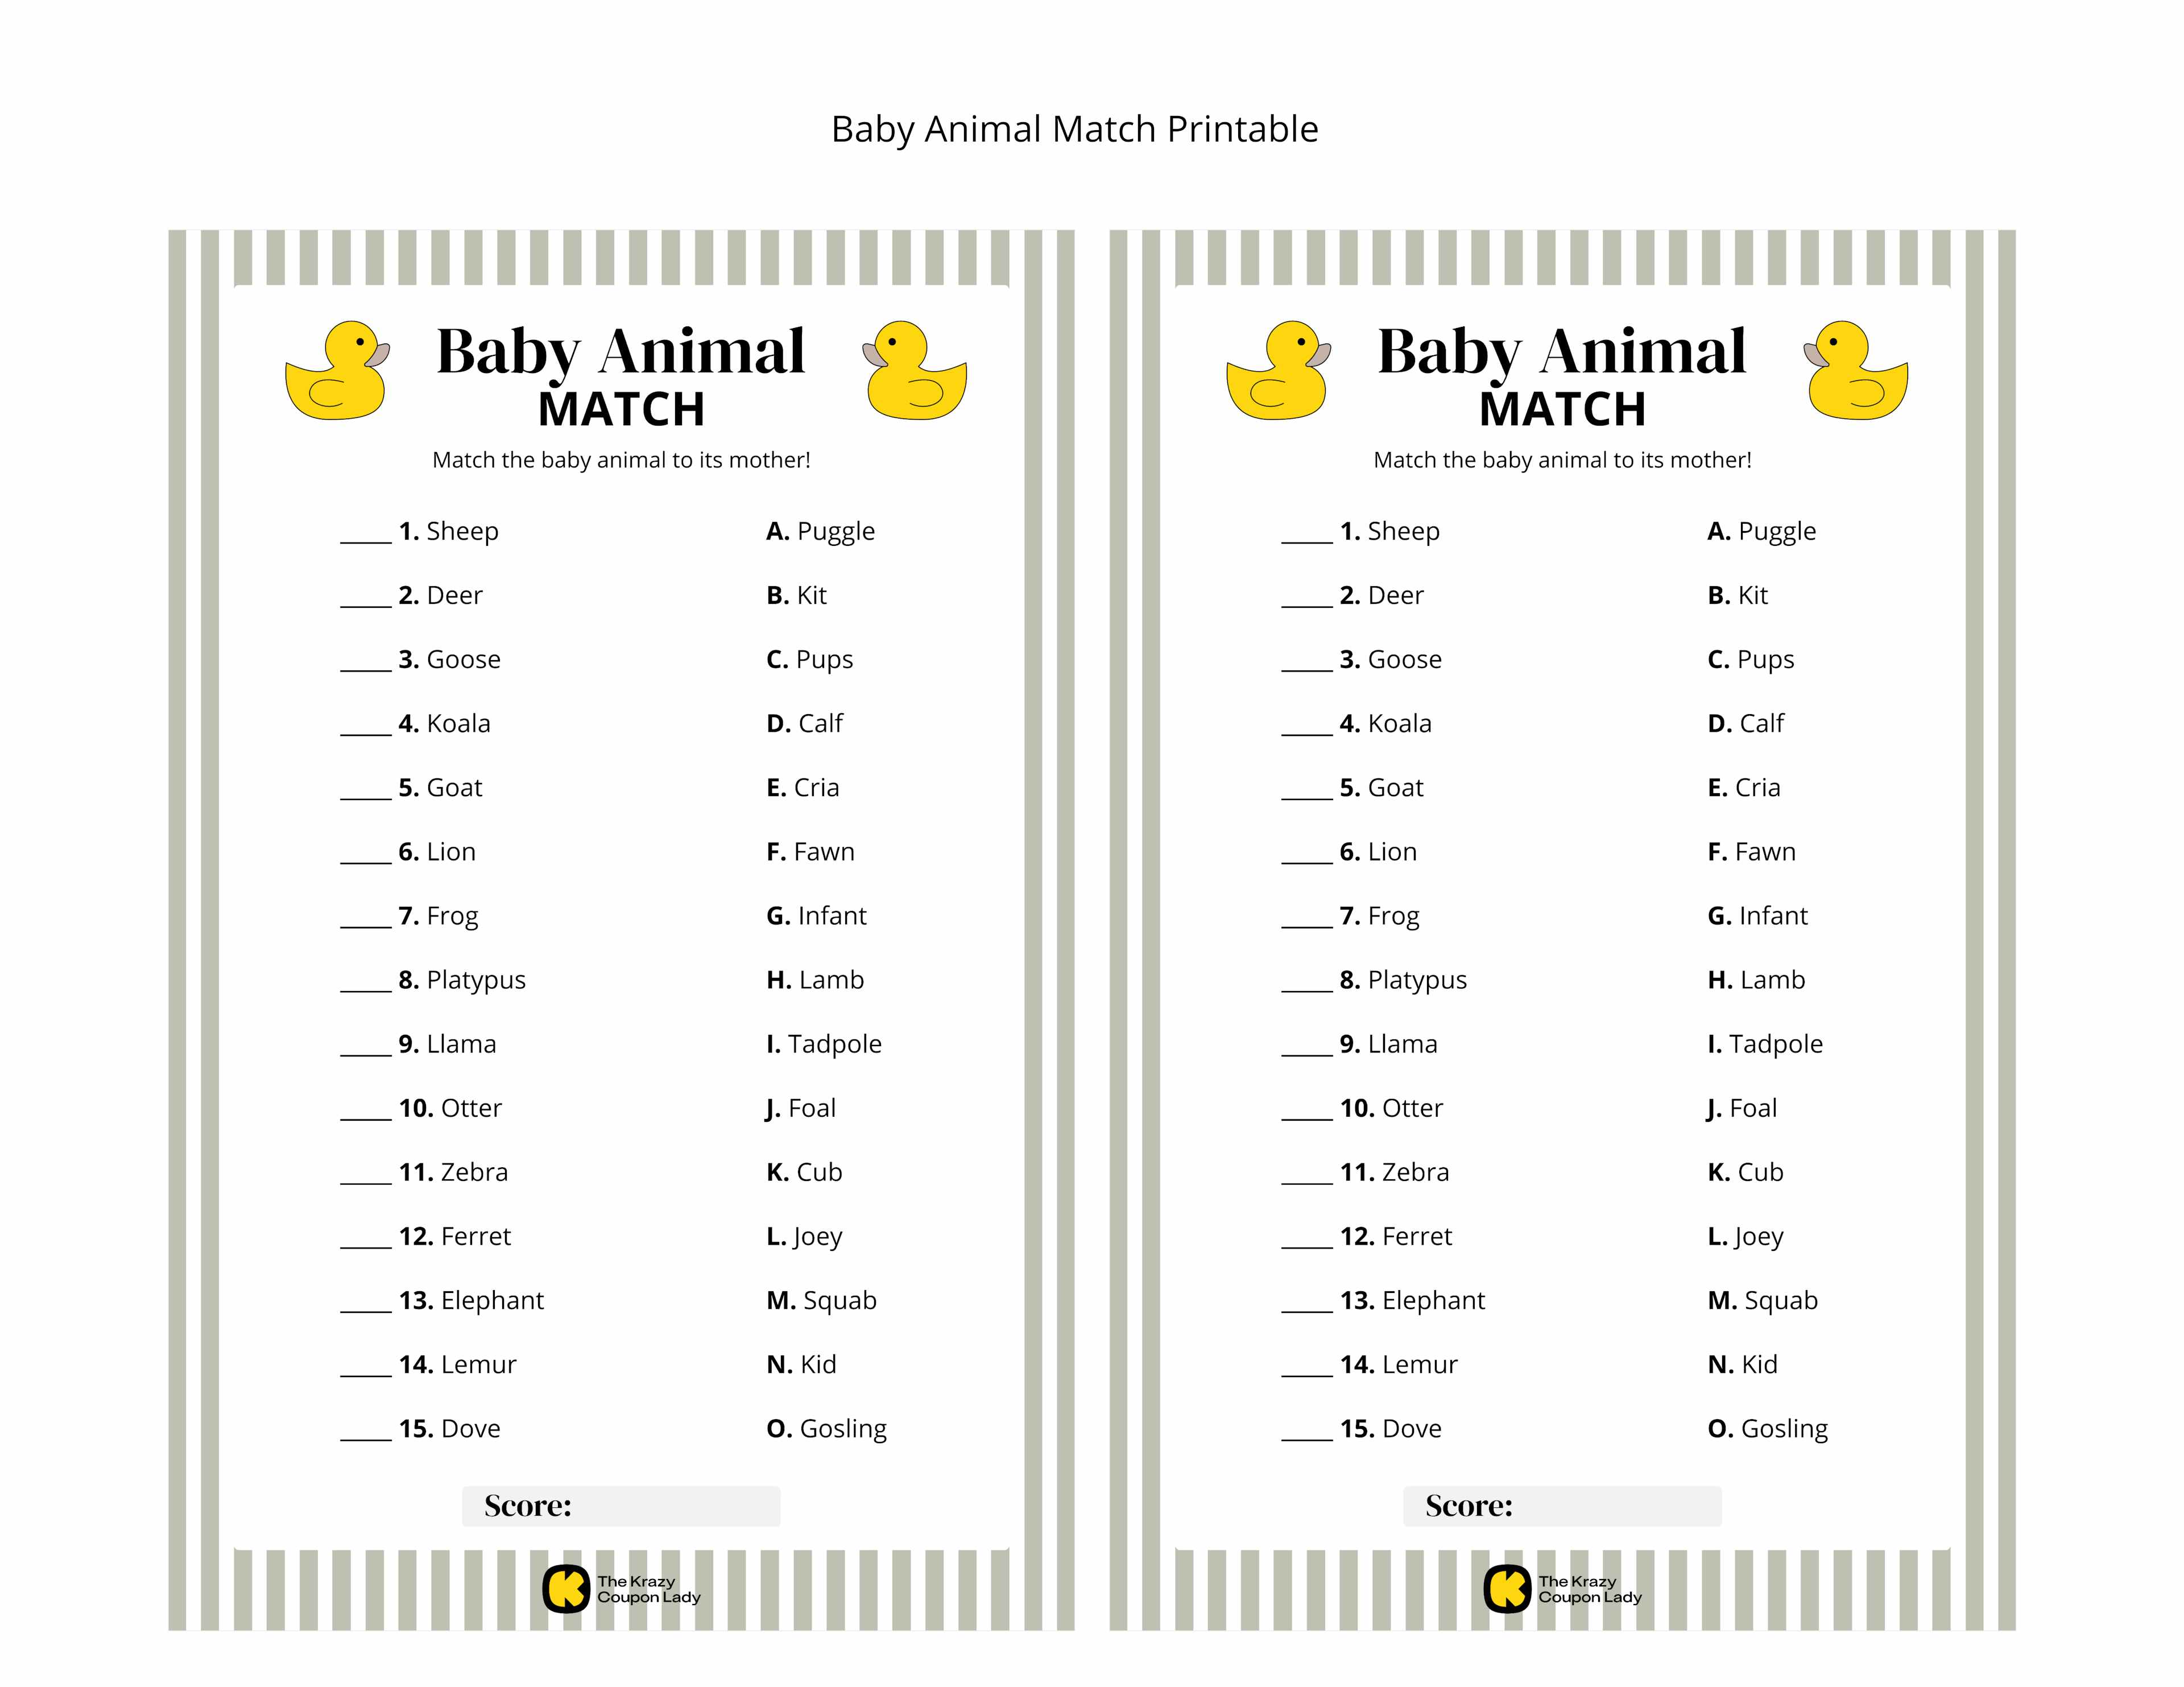 Baby Animal Match printable game